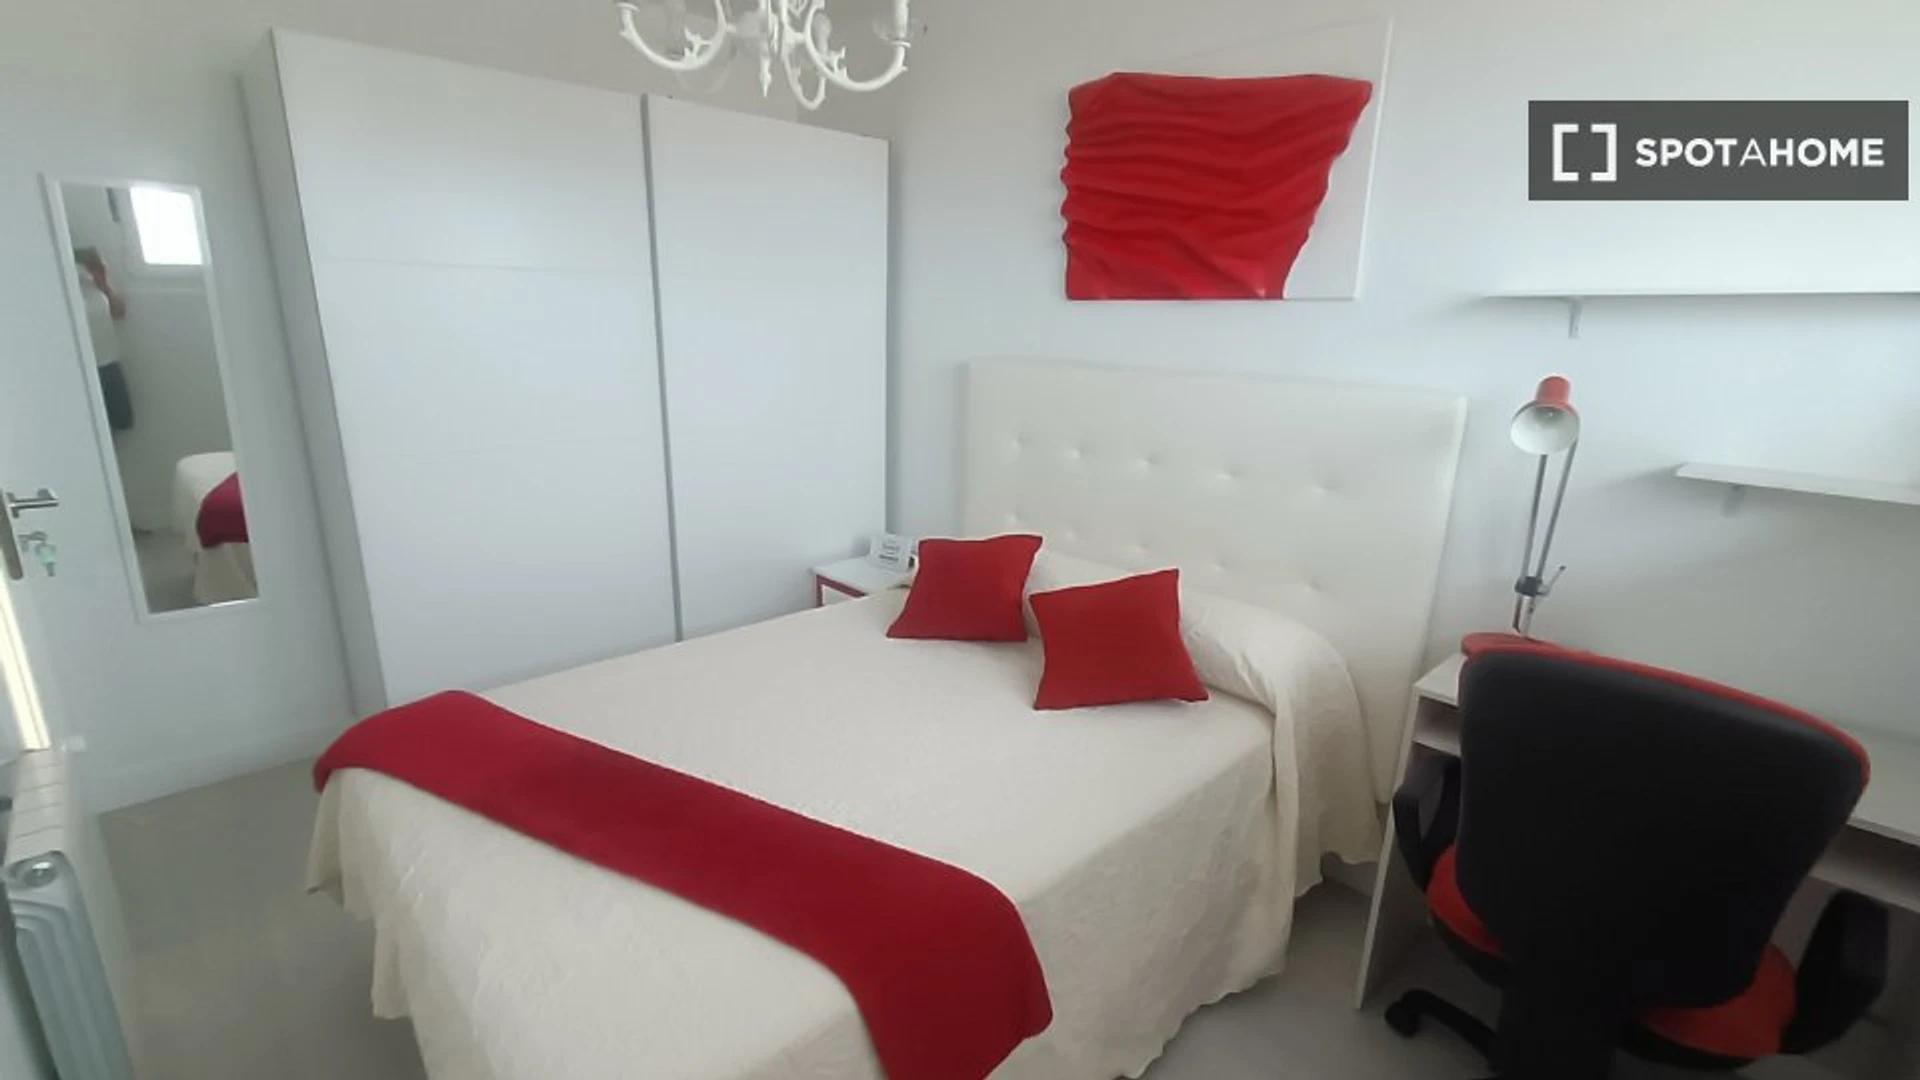 Chambre à louer avec lit double Santander